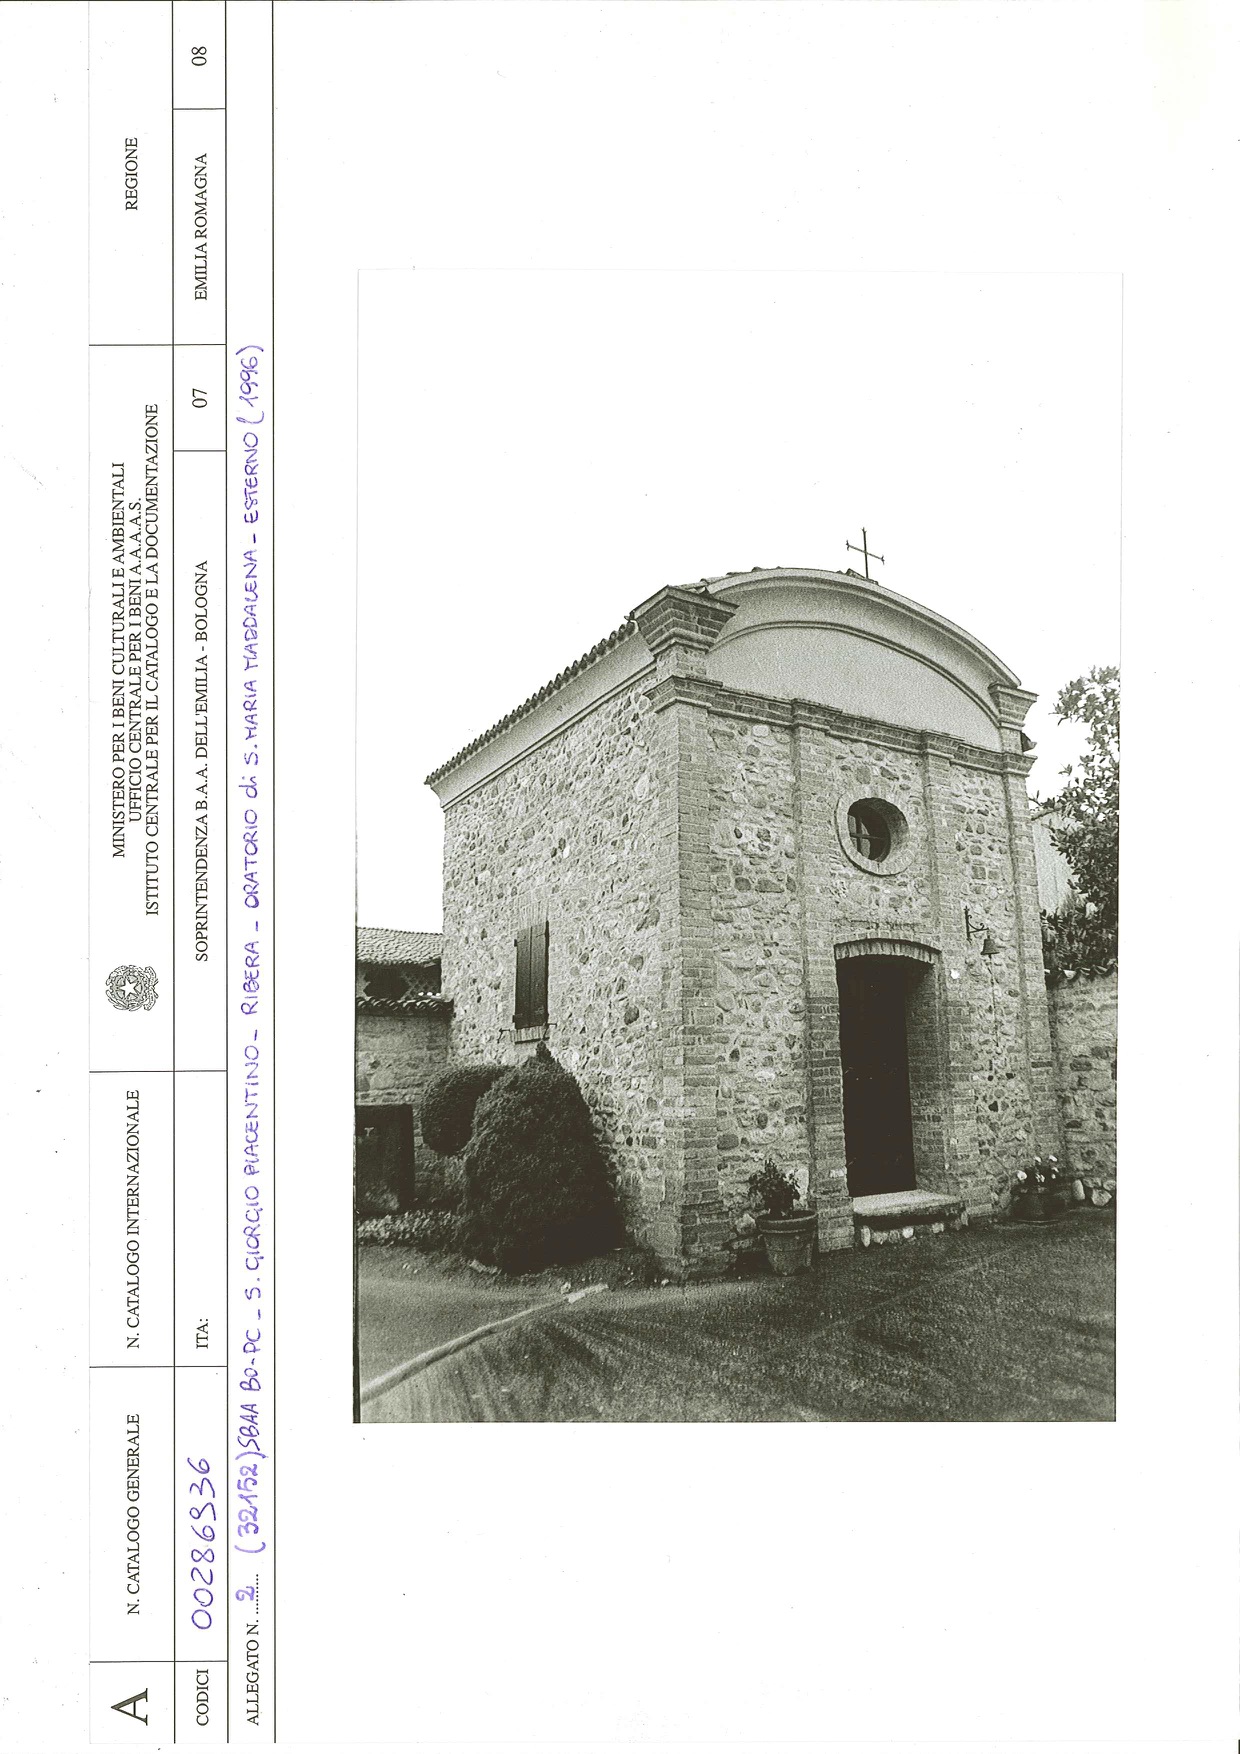 Oratorio di S. Maria Maddalena (oratorio) - San Giorgio Piacentino (PC) 